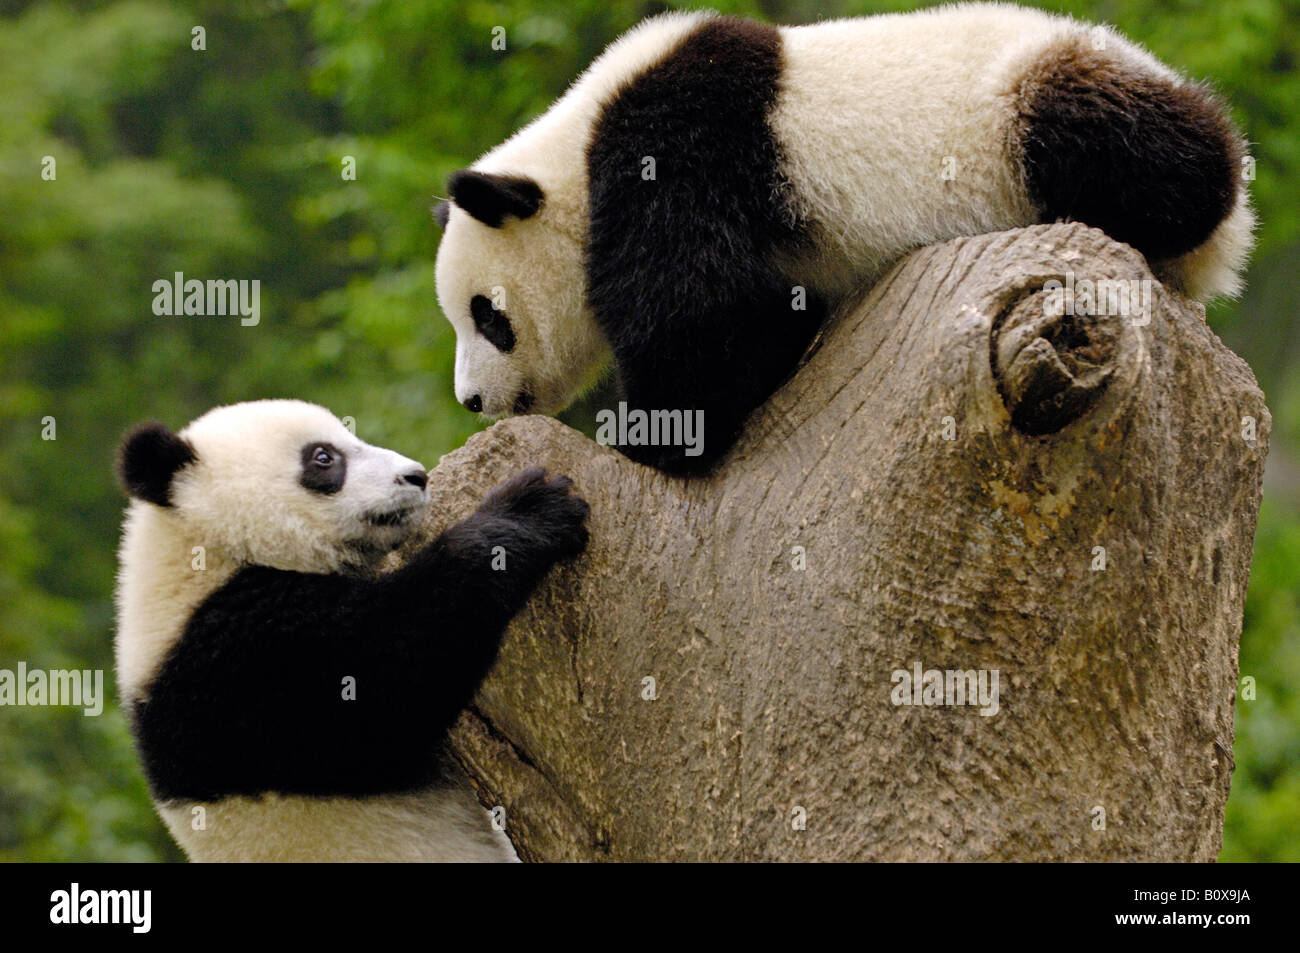 El panda gigante (Ailuropoda melanoleuca). Dos individuos jóvenes jugando en un tocón de árbol Foto de stock